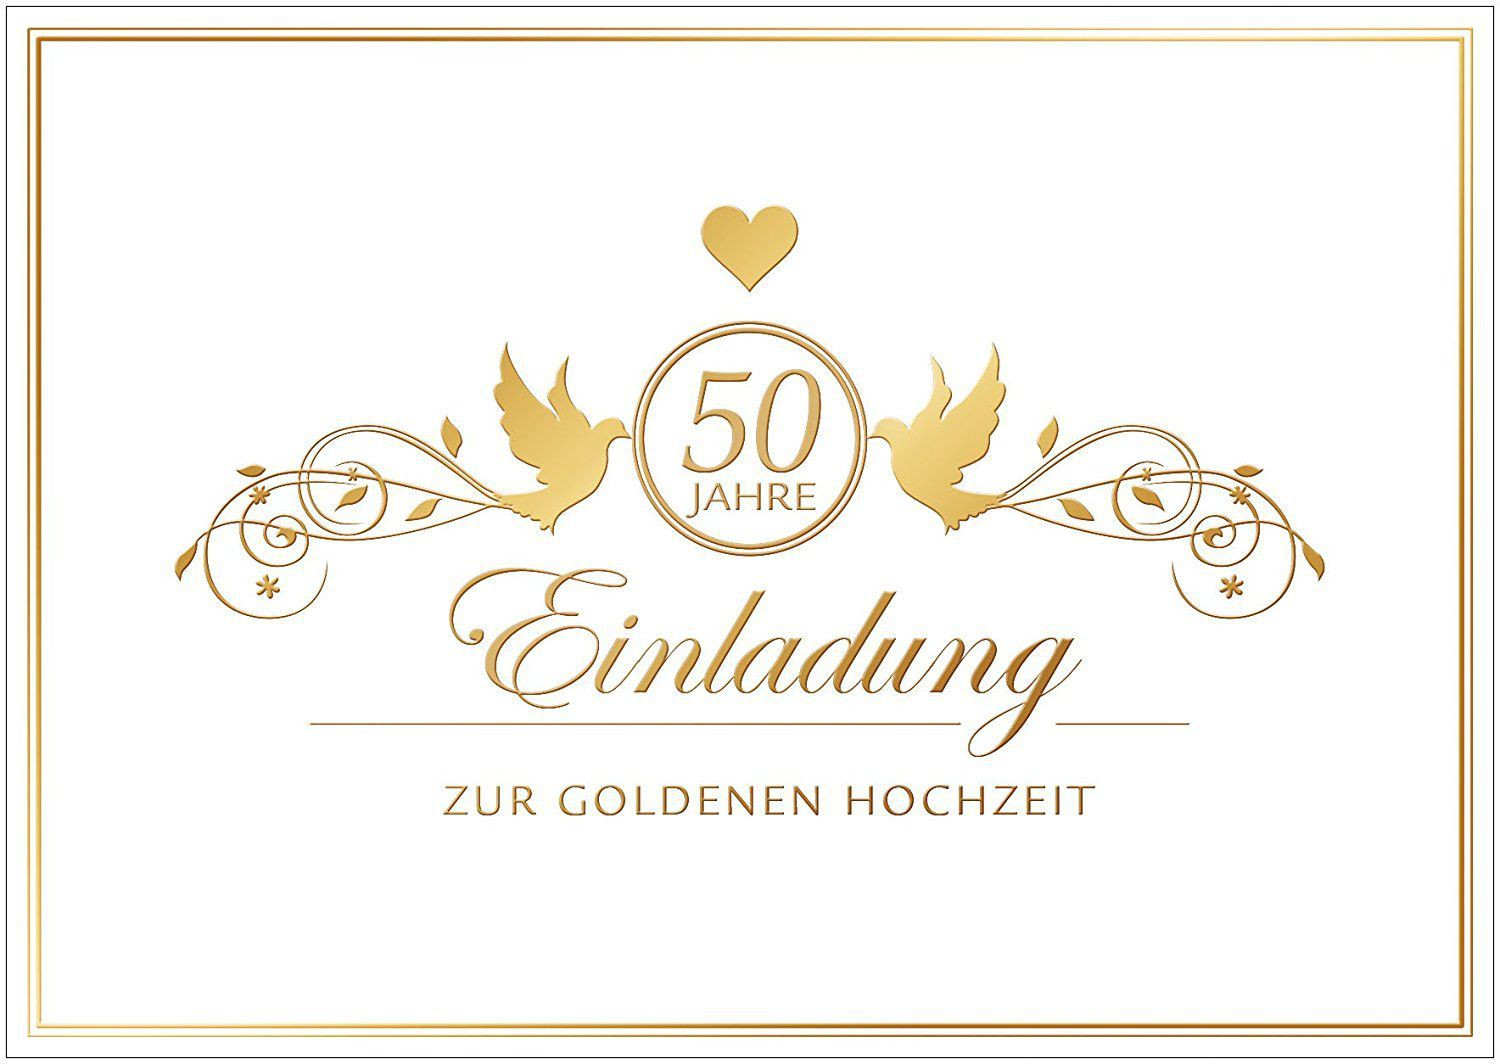 Einladungskarten Goldene Hochzeit Kostenlos Ausdrucken
 Einladungskarten Goldene Hochzeit Einladungskarten